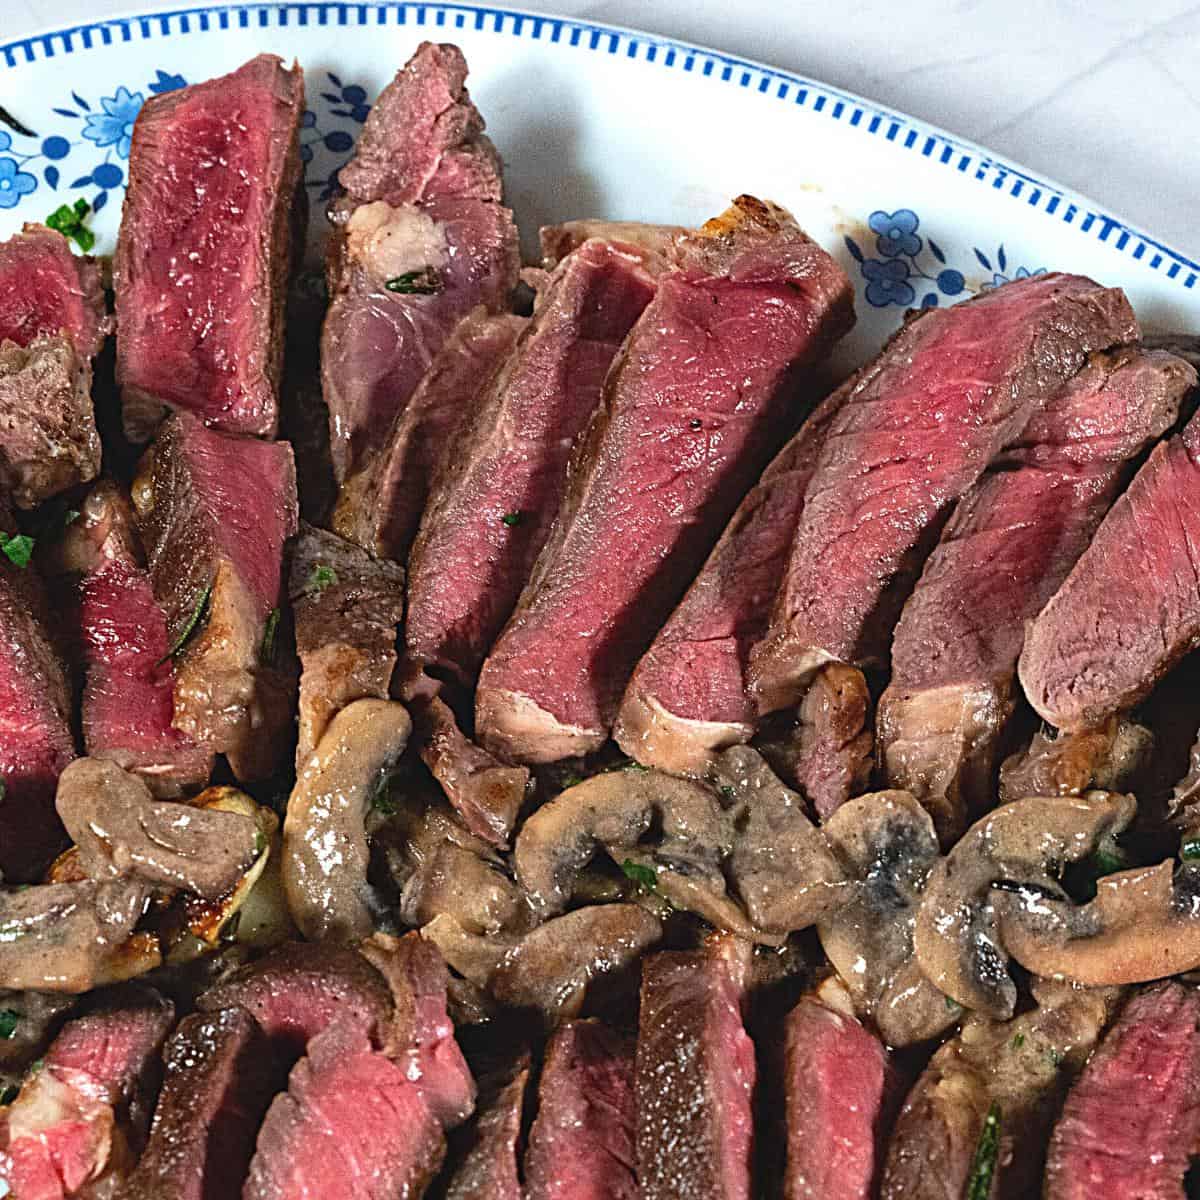 Med rare steak sliced on a platter.